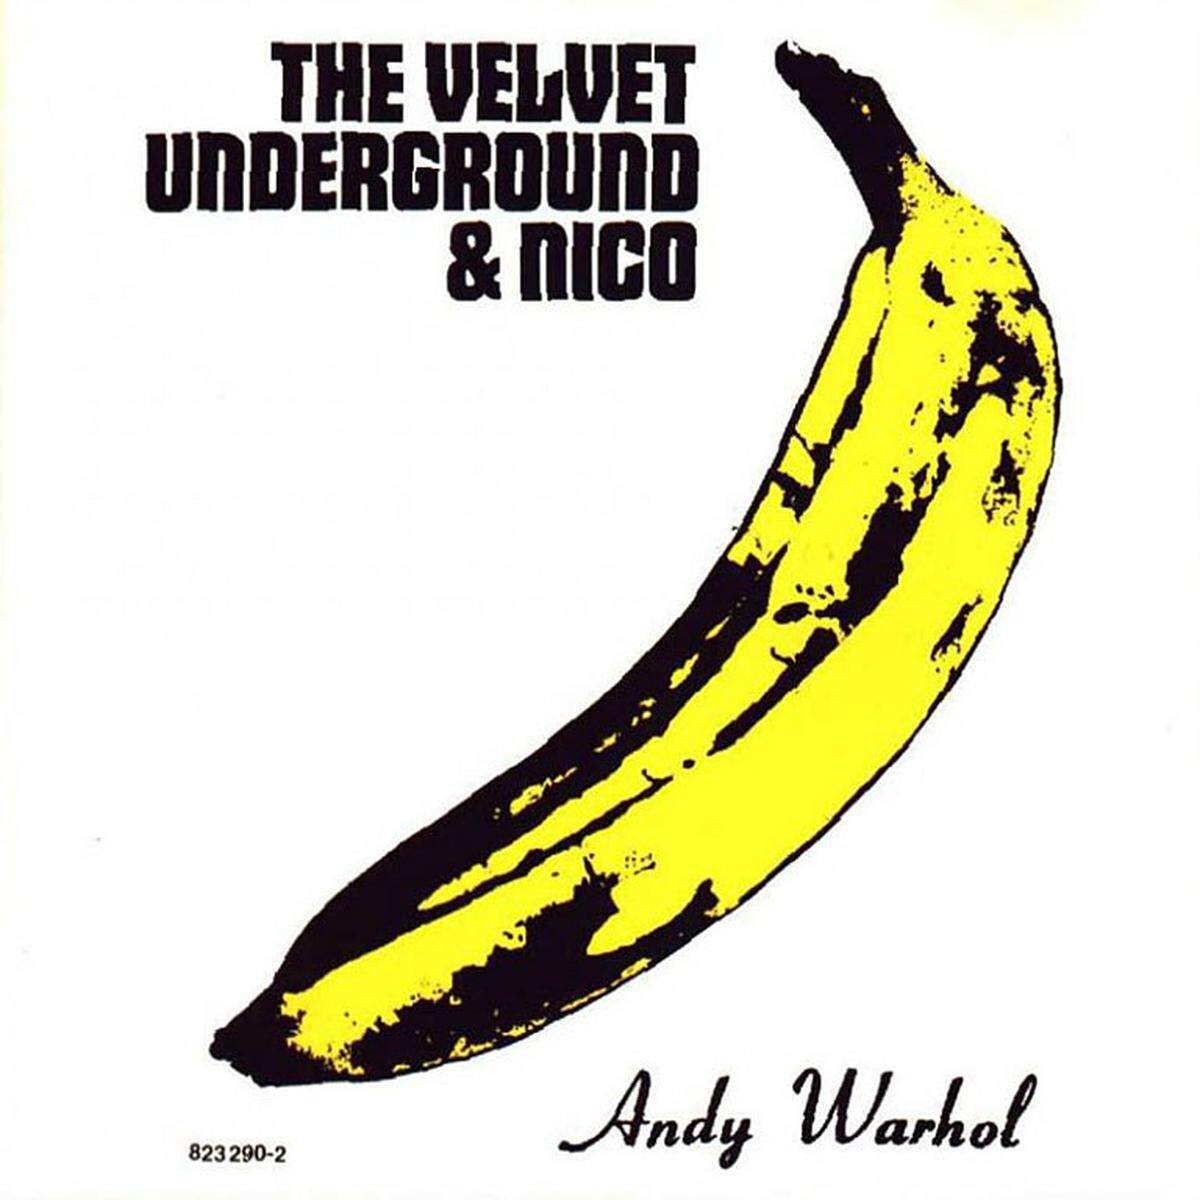 Und noch einmal Andy Warhol. Das Album-Cover von "The Velvet Underground &amp; Nico" (1967) hängt wohl in jeder zweiten Studenten-WG. Abgesehen davon: Die Musik von Lou Reed dürfen auch Nicht-Studenten hören.